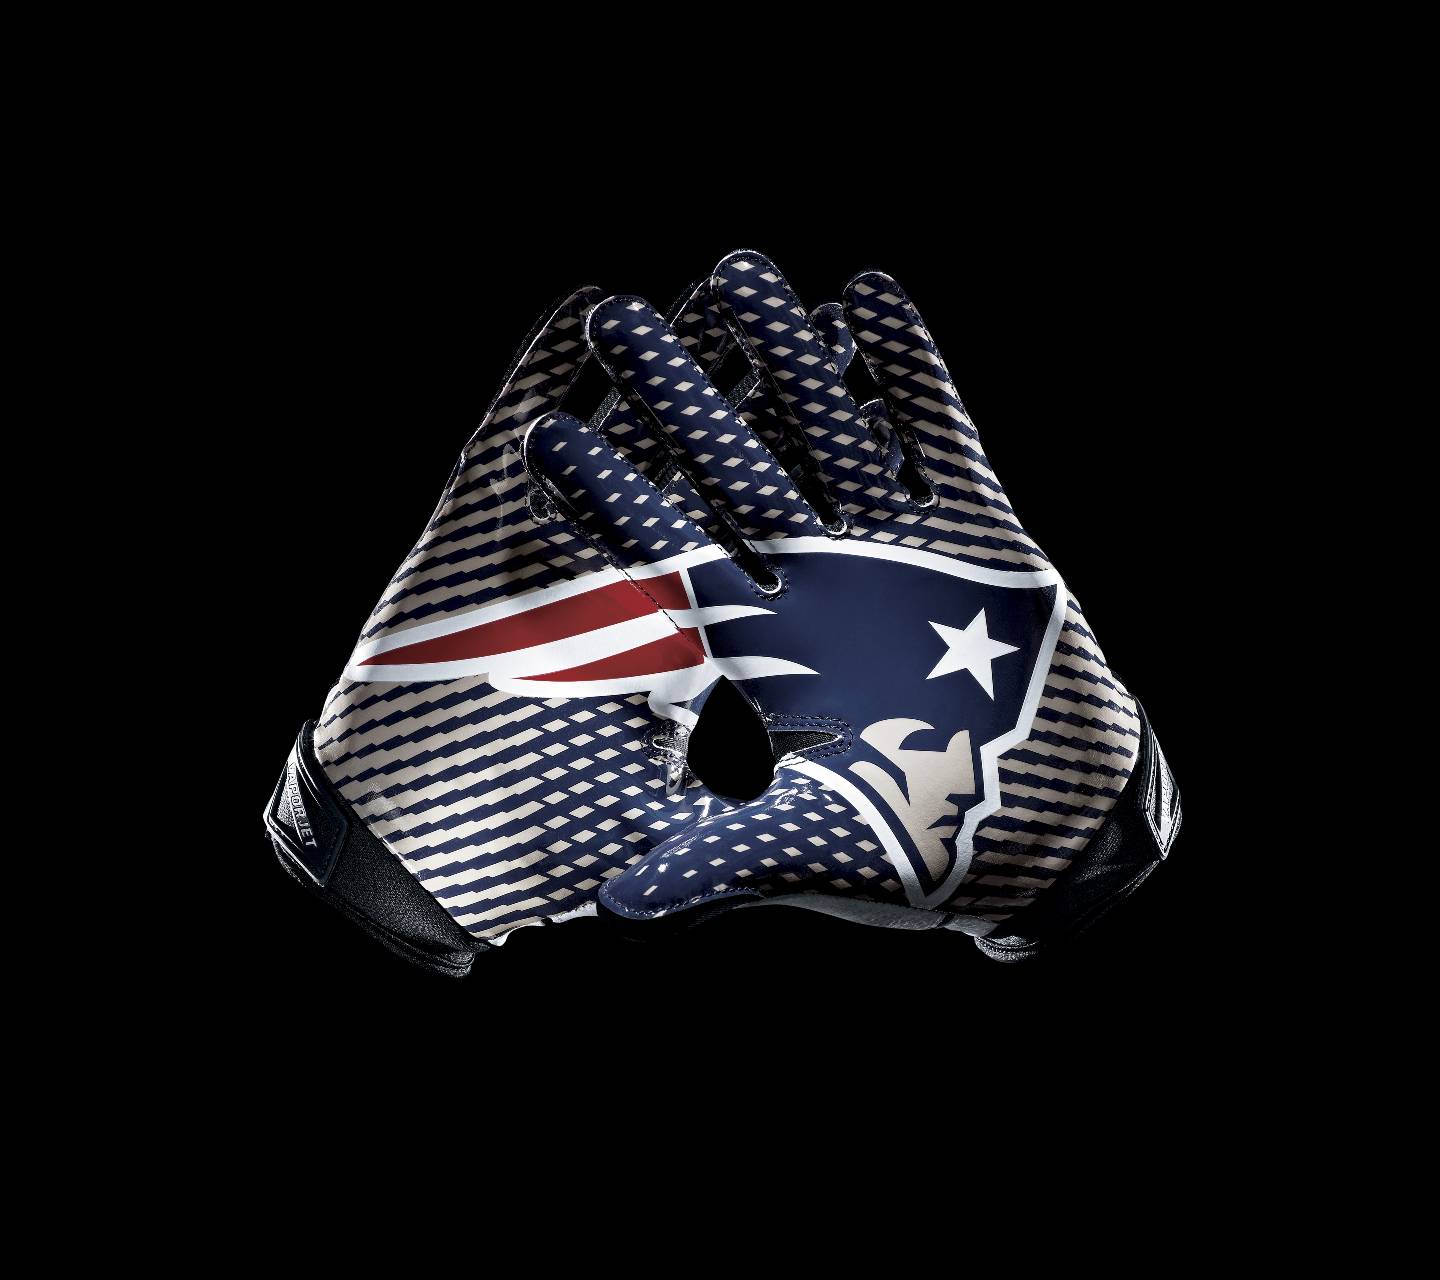 NFL Patriots Gloves Wallpaper